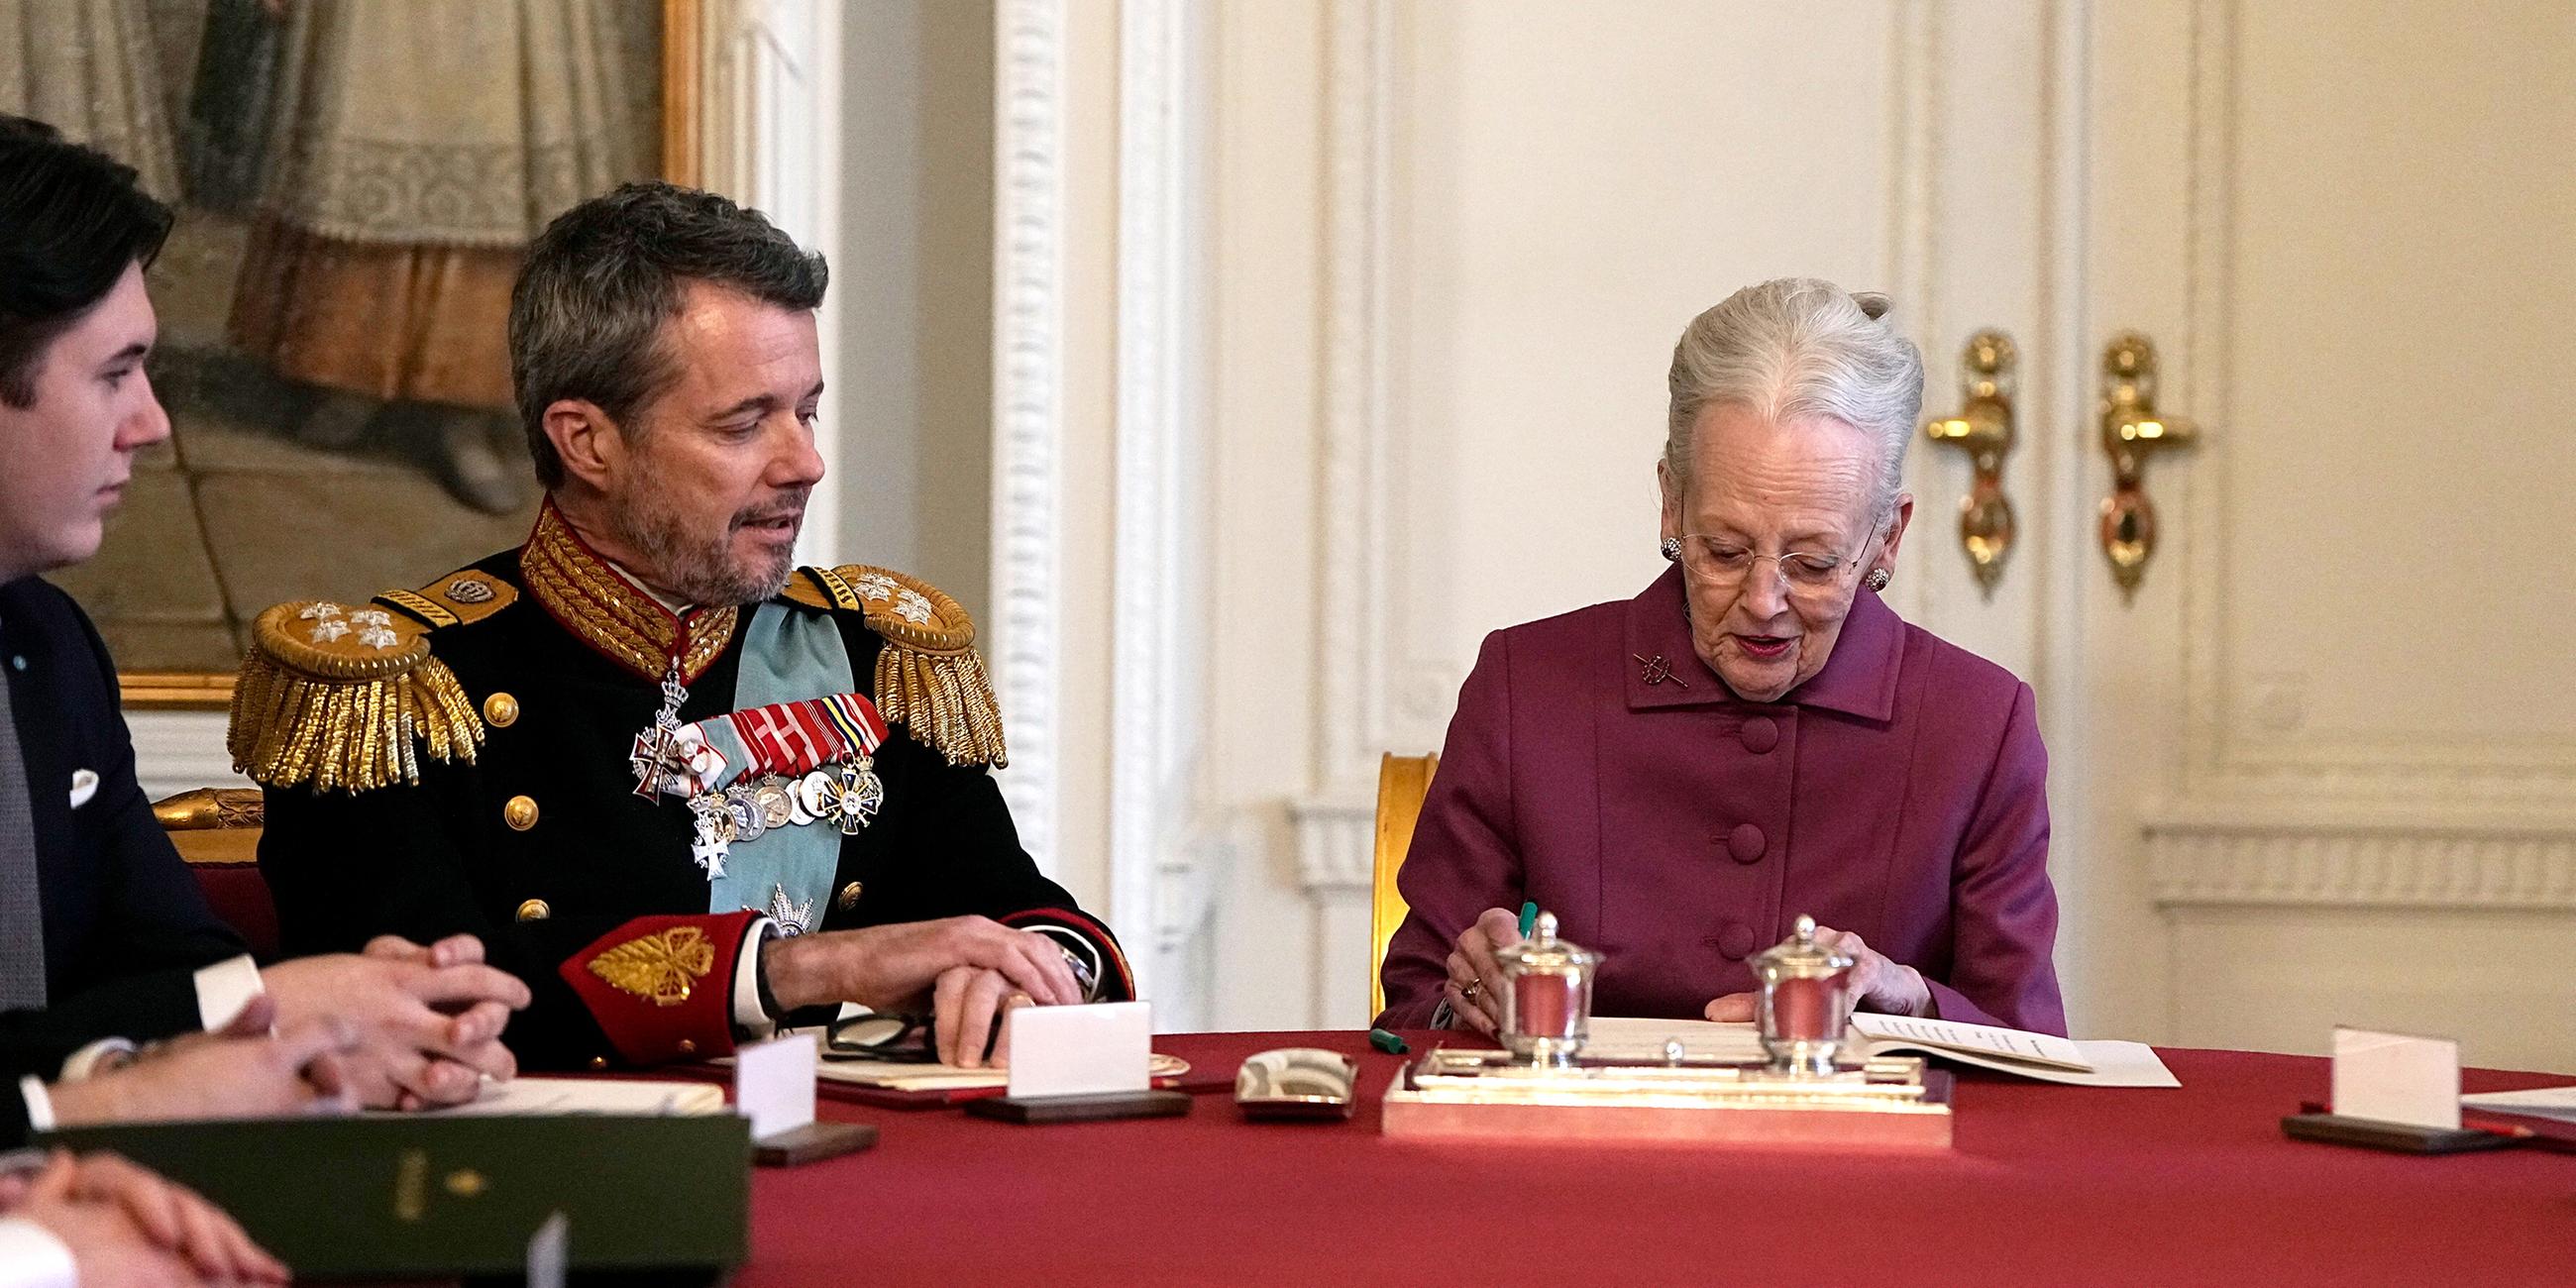 Dänemark, Kopenhagen: Königin Margrethe II. von Dänemark unterzeichnet im Staatsrat von Schloss Christiansborg die Abdankungserklärung.